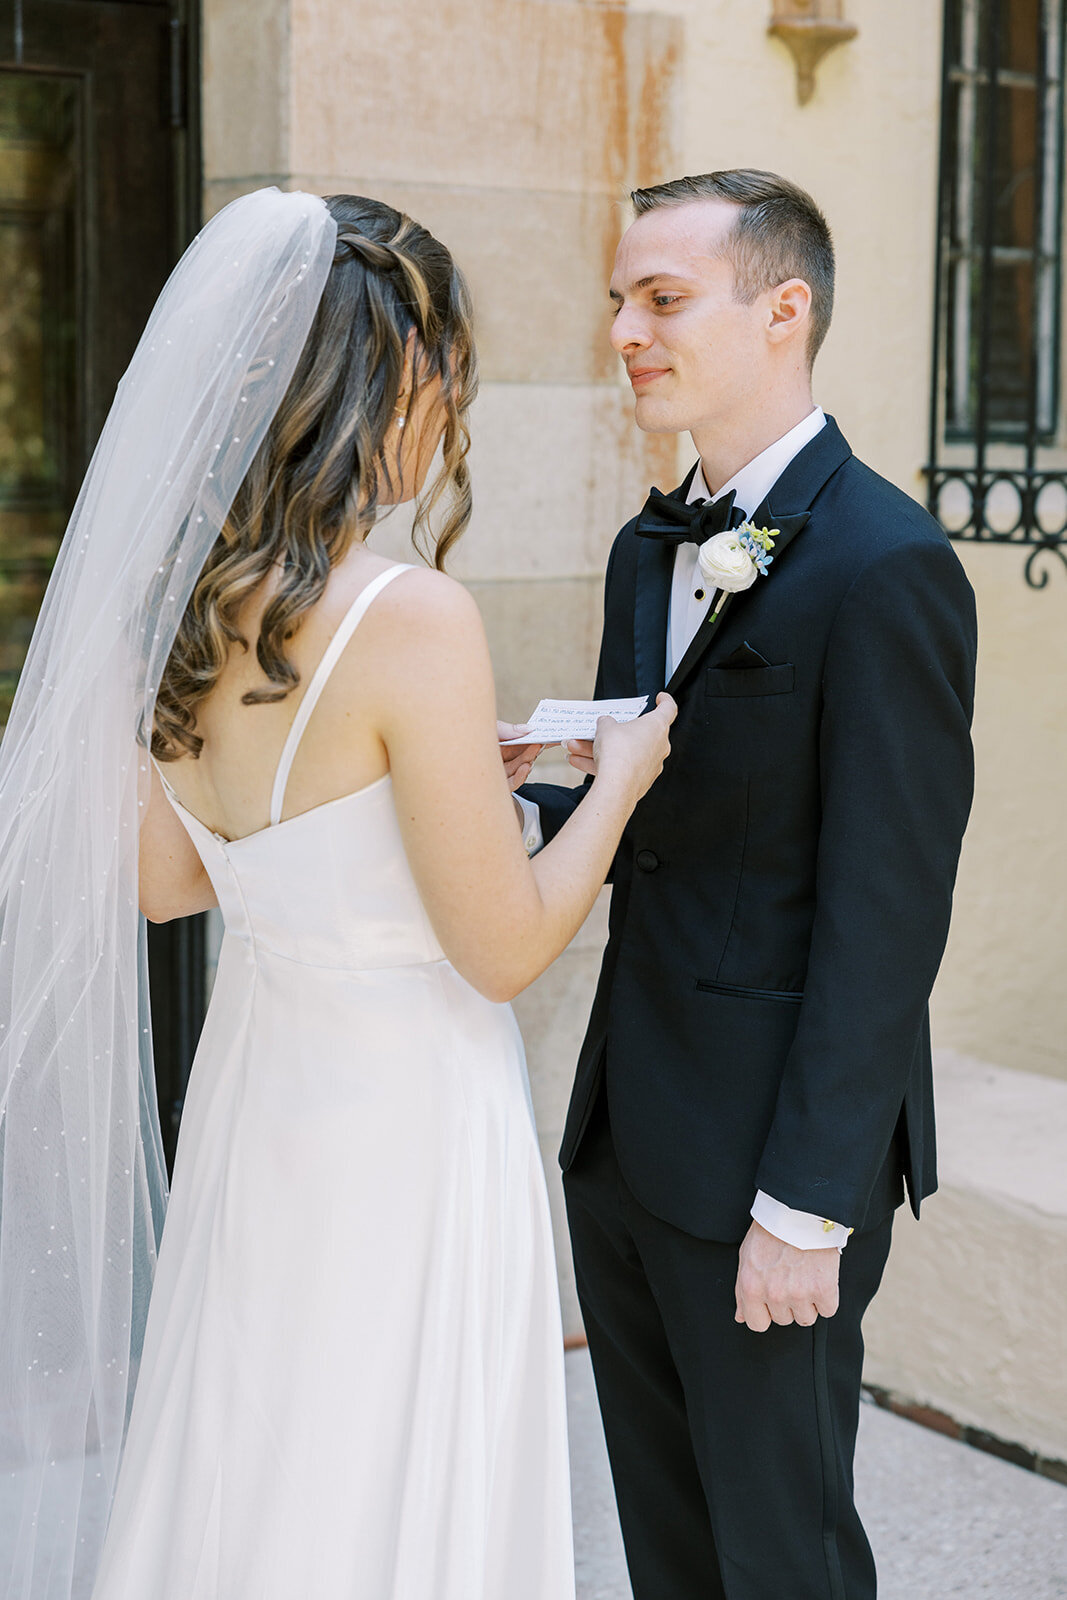 CORNELIA ZAISS PHOTOGRAPHY COURTNEY + ANDREW WEDDING 0350_websize